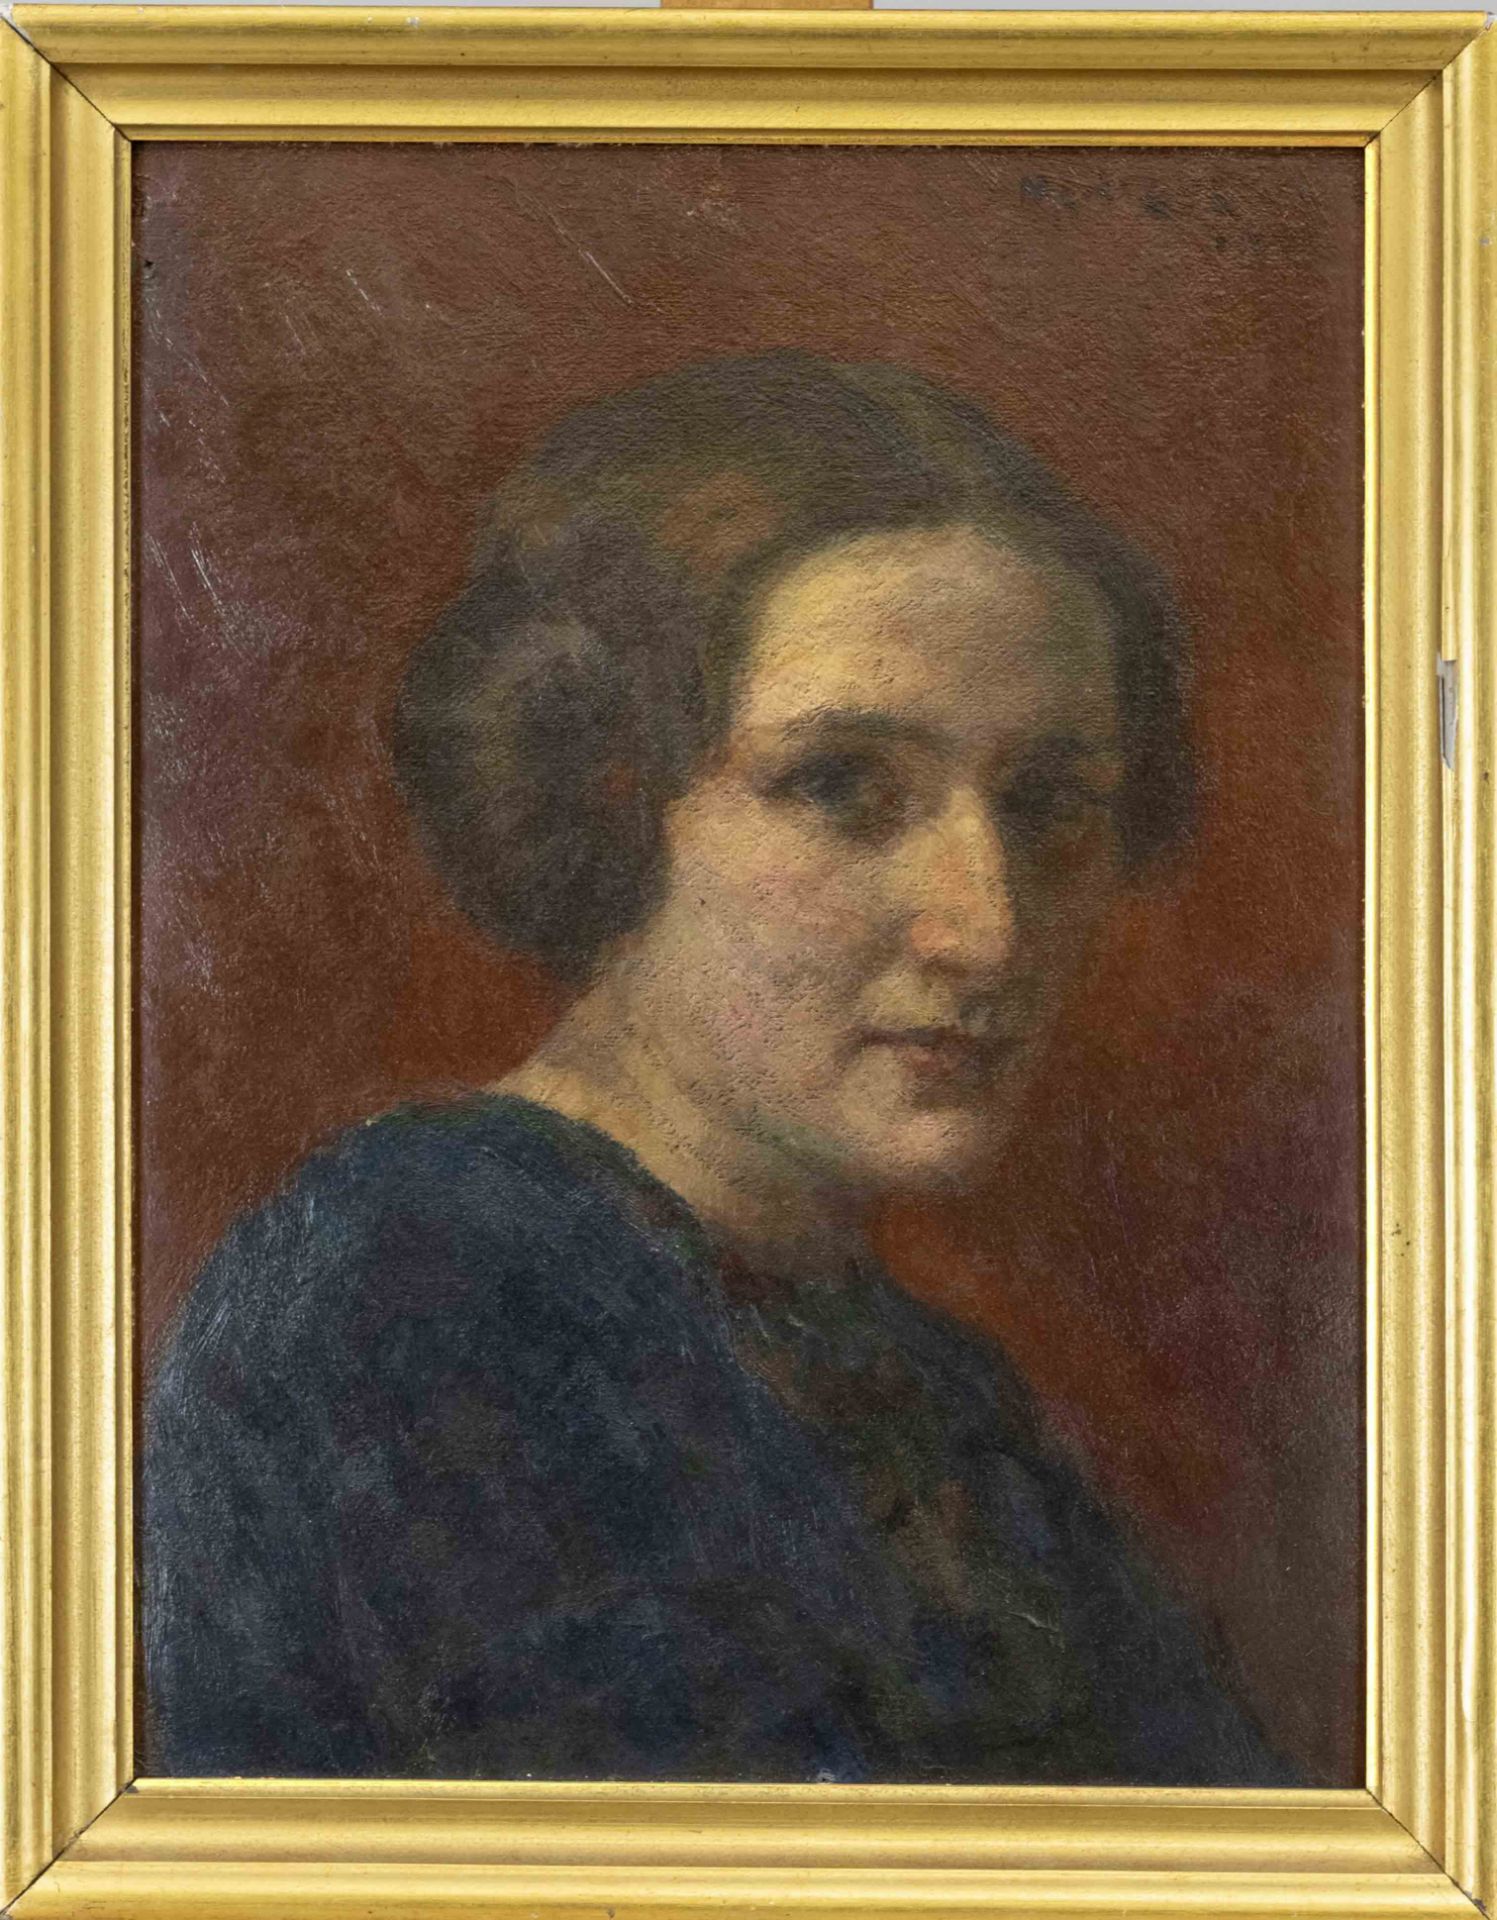 Maurycy Medrzycki (1890-1951) (